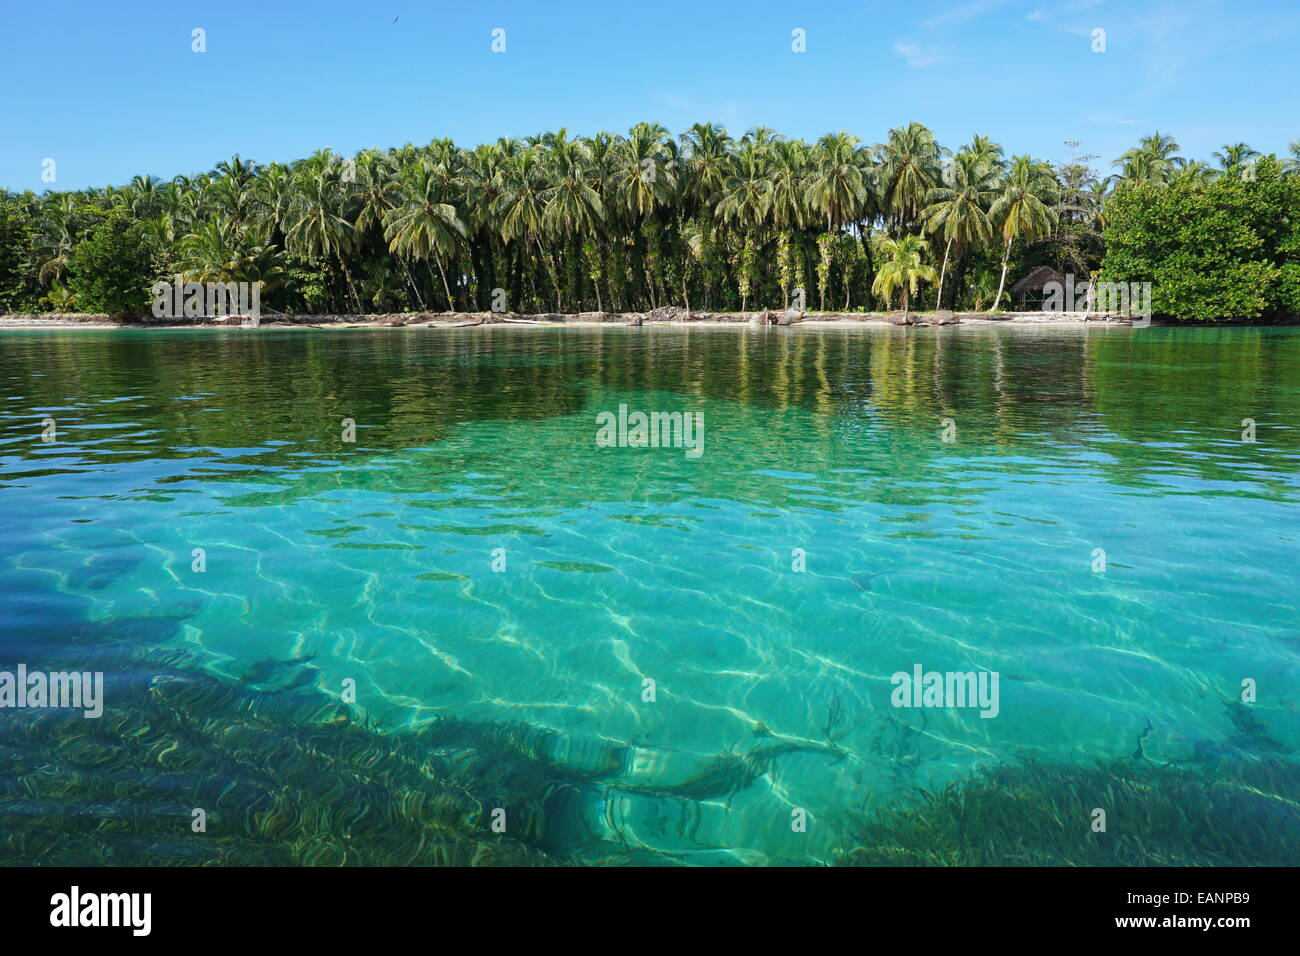 Côte tropicale avec une végétation luxuriante et des eaux limpides de la mer des Caraïbes, Zapatillas islands situé dans la région de Bocas del Toro, PANAMA Banque D'Images